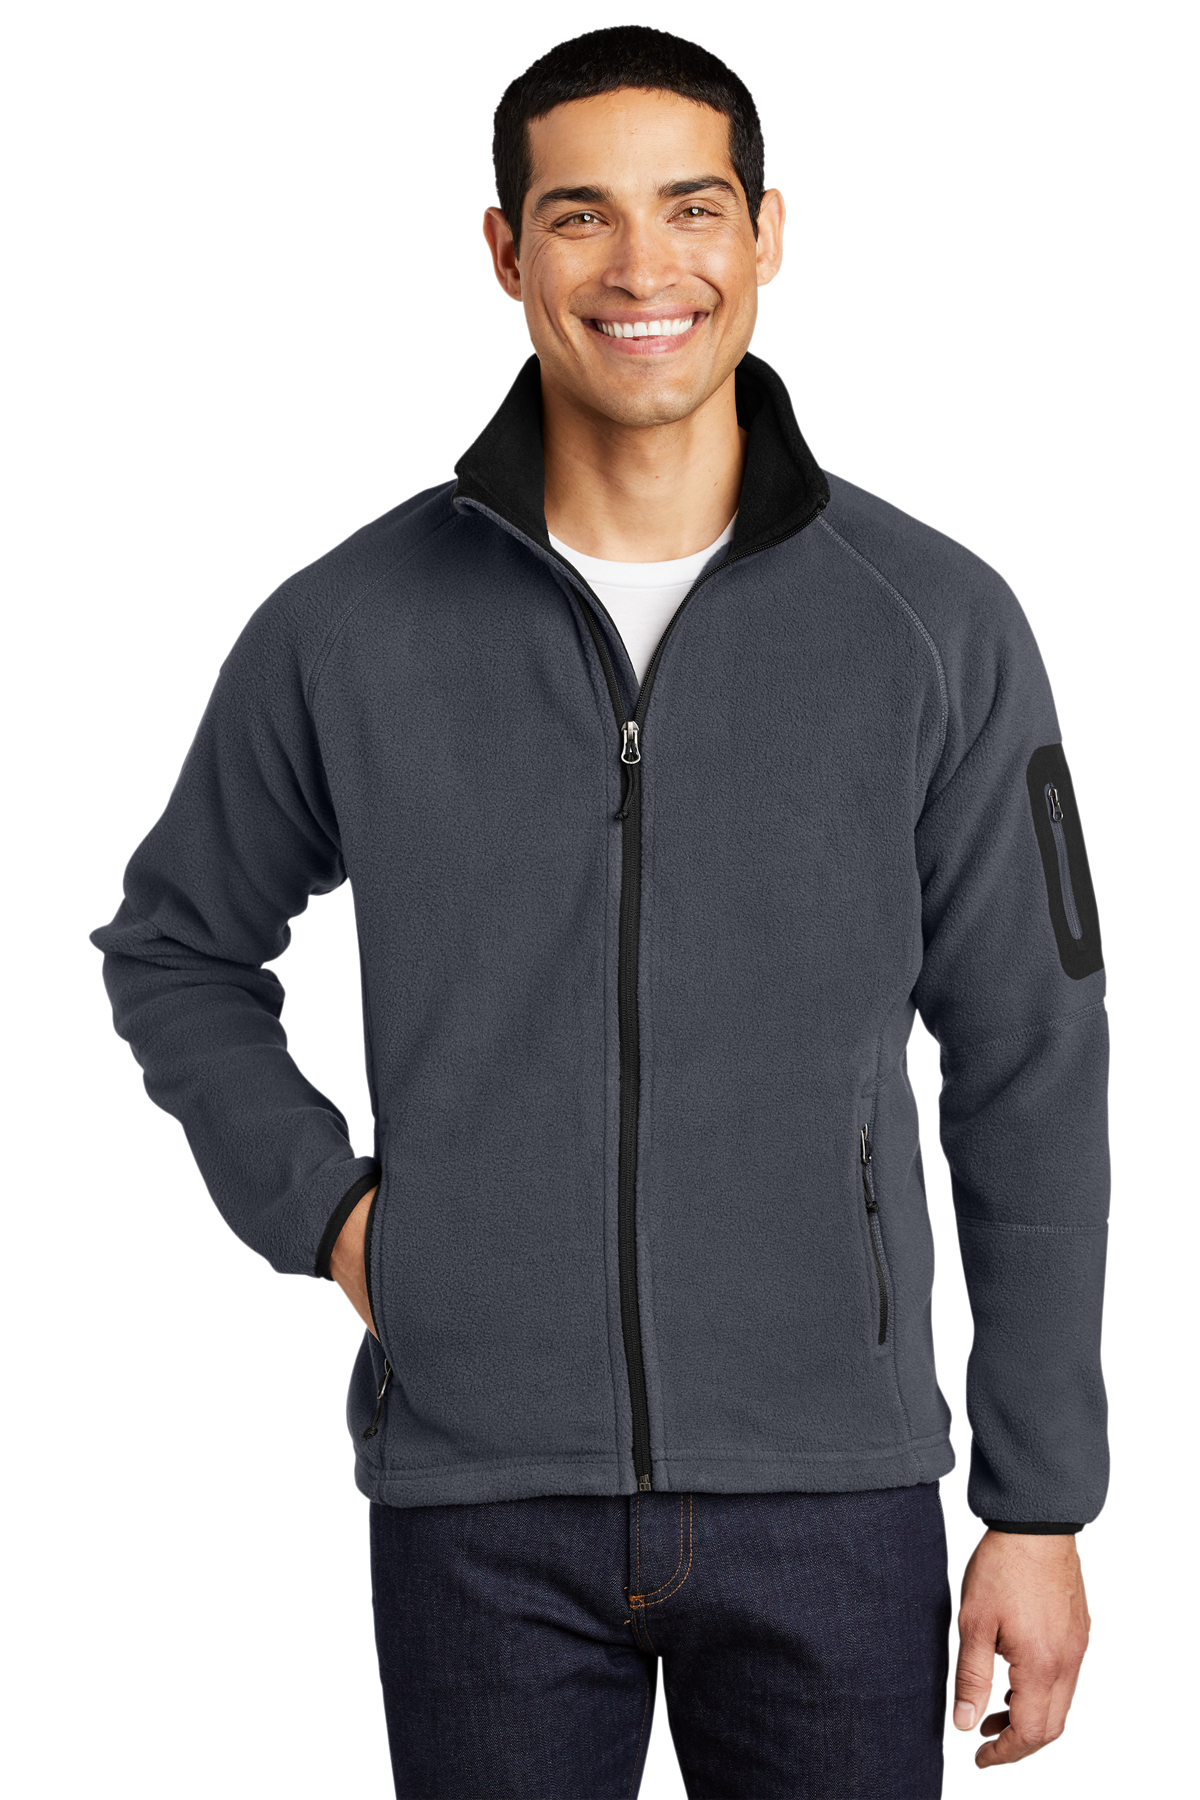 Port Authority Enhanced Value Fleece Full-Zip Jacket